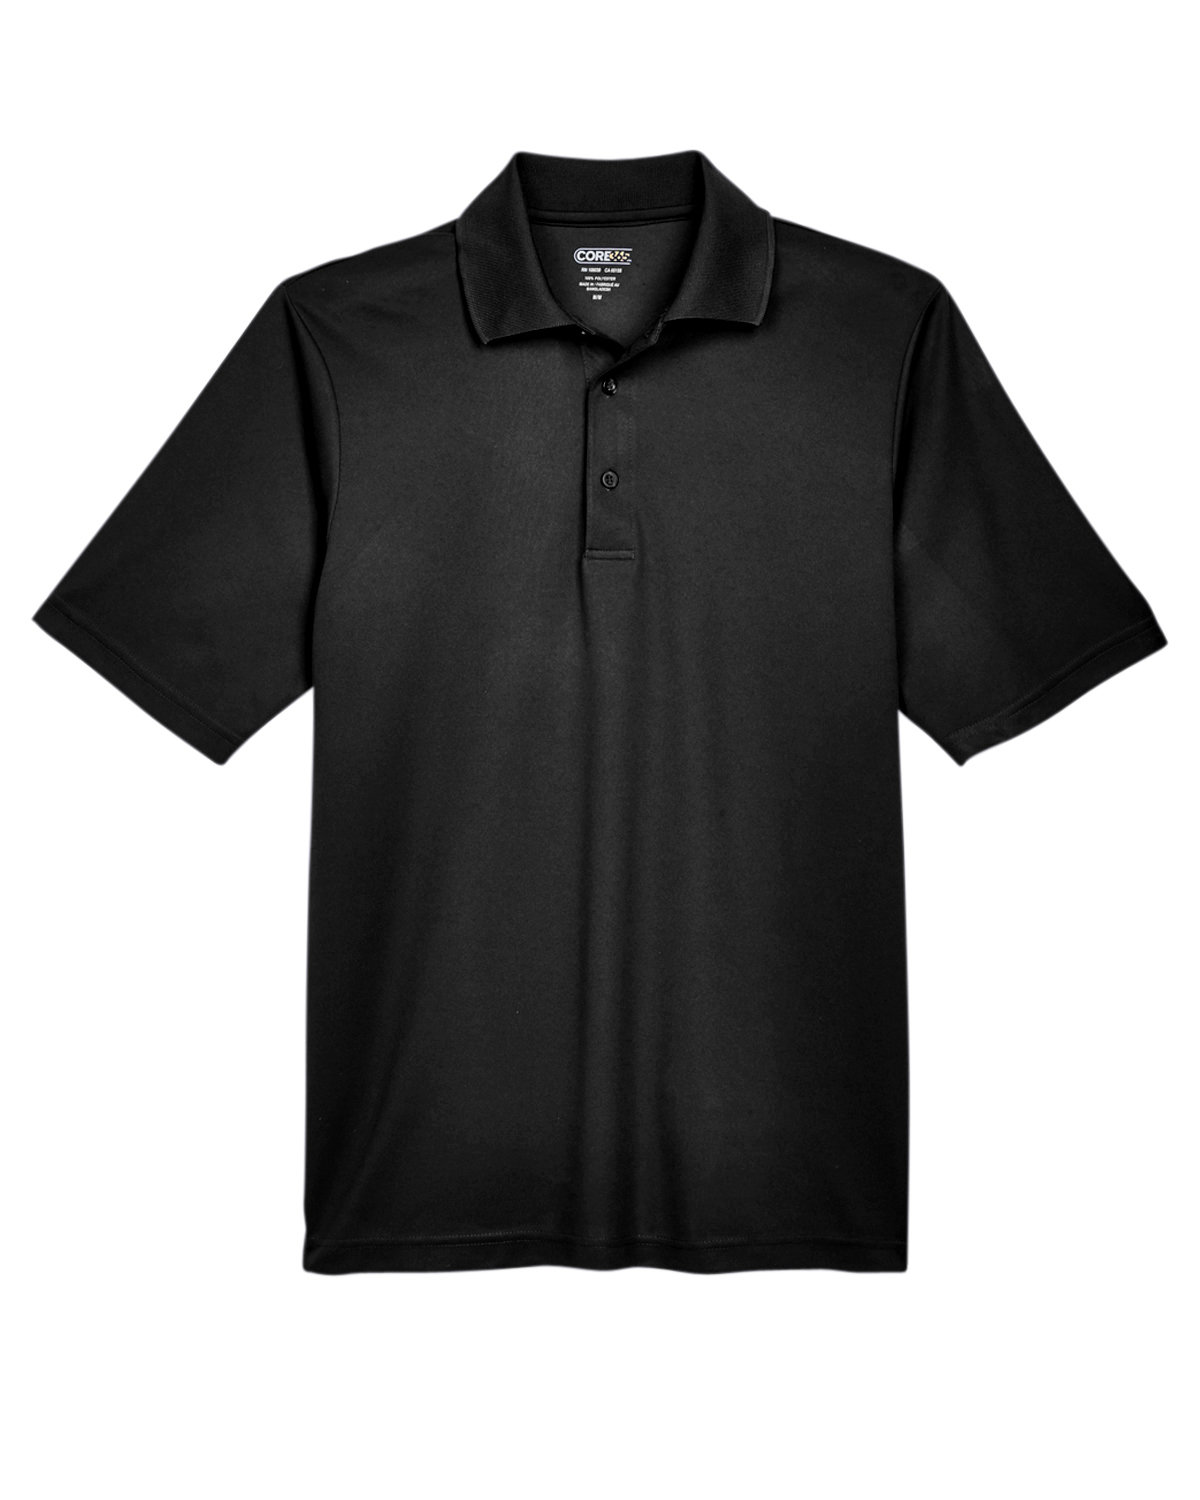 Abbigliamento Abbigliamento genere neutro per adulti Top e magliette Polo 88181 Core 365 Polo Uomo Origin Performance Piqué 